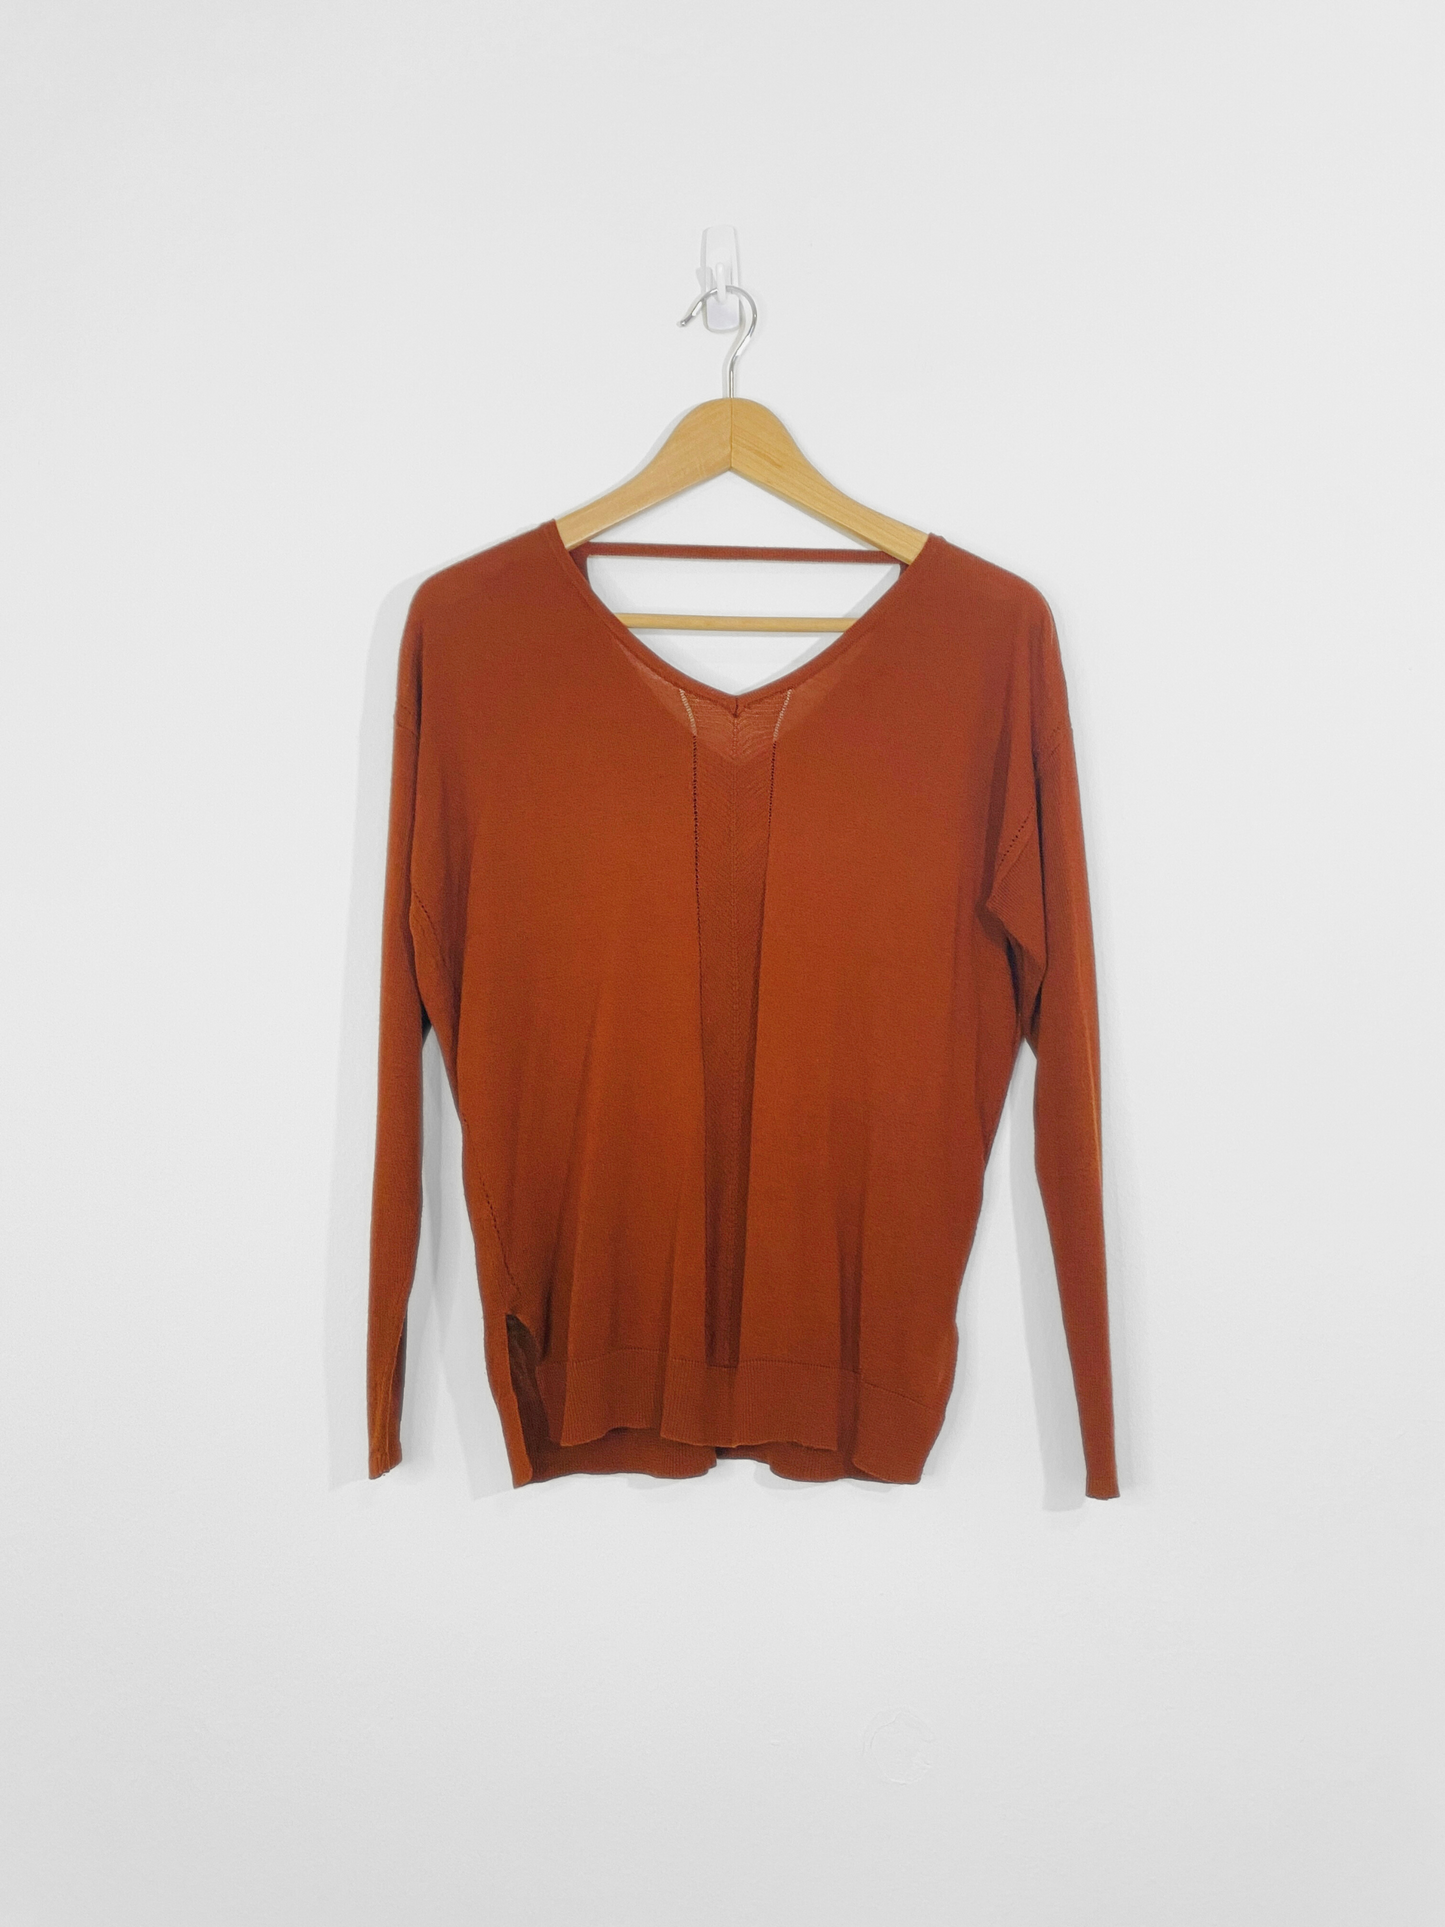 Burnt Orange Sweater (Medium)